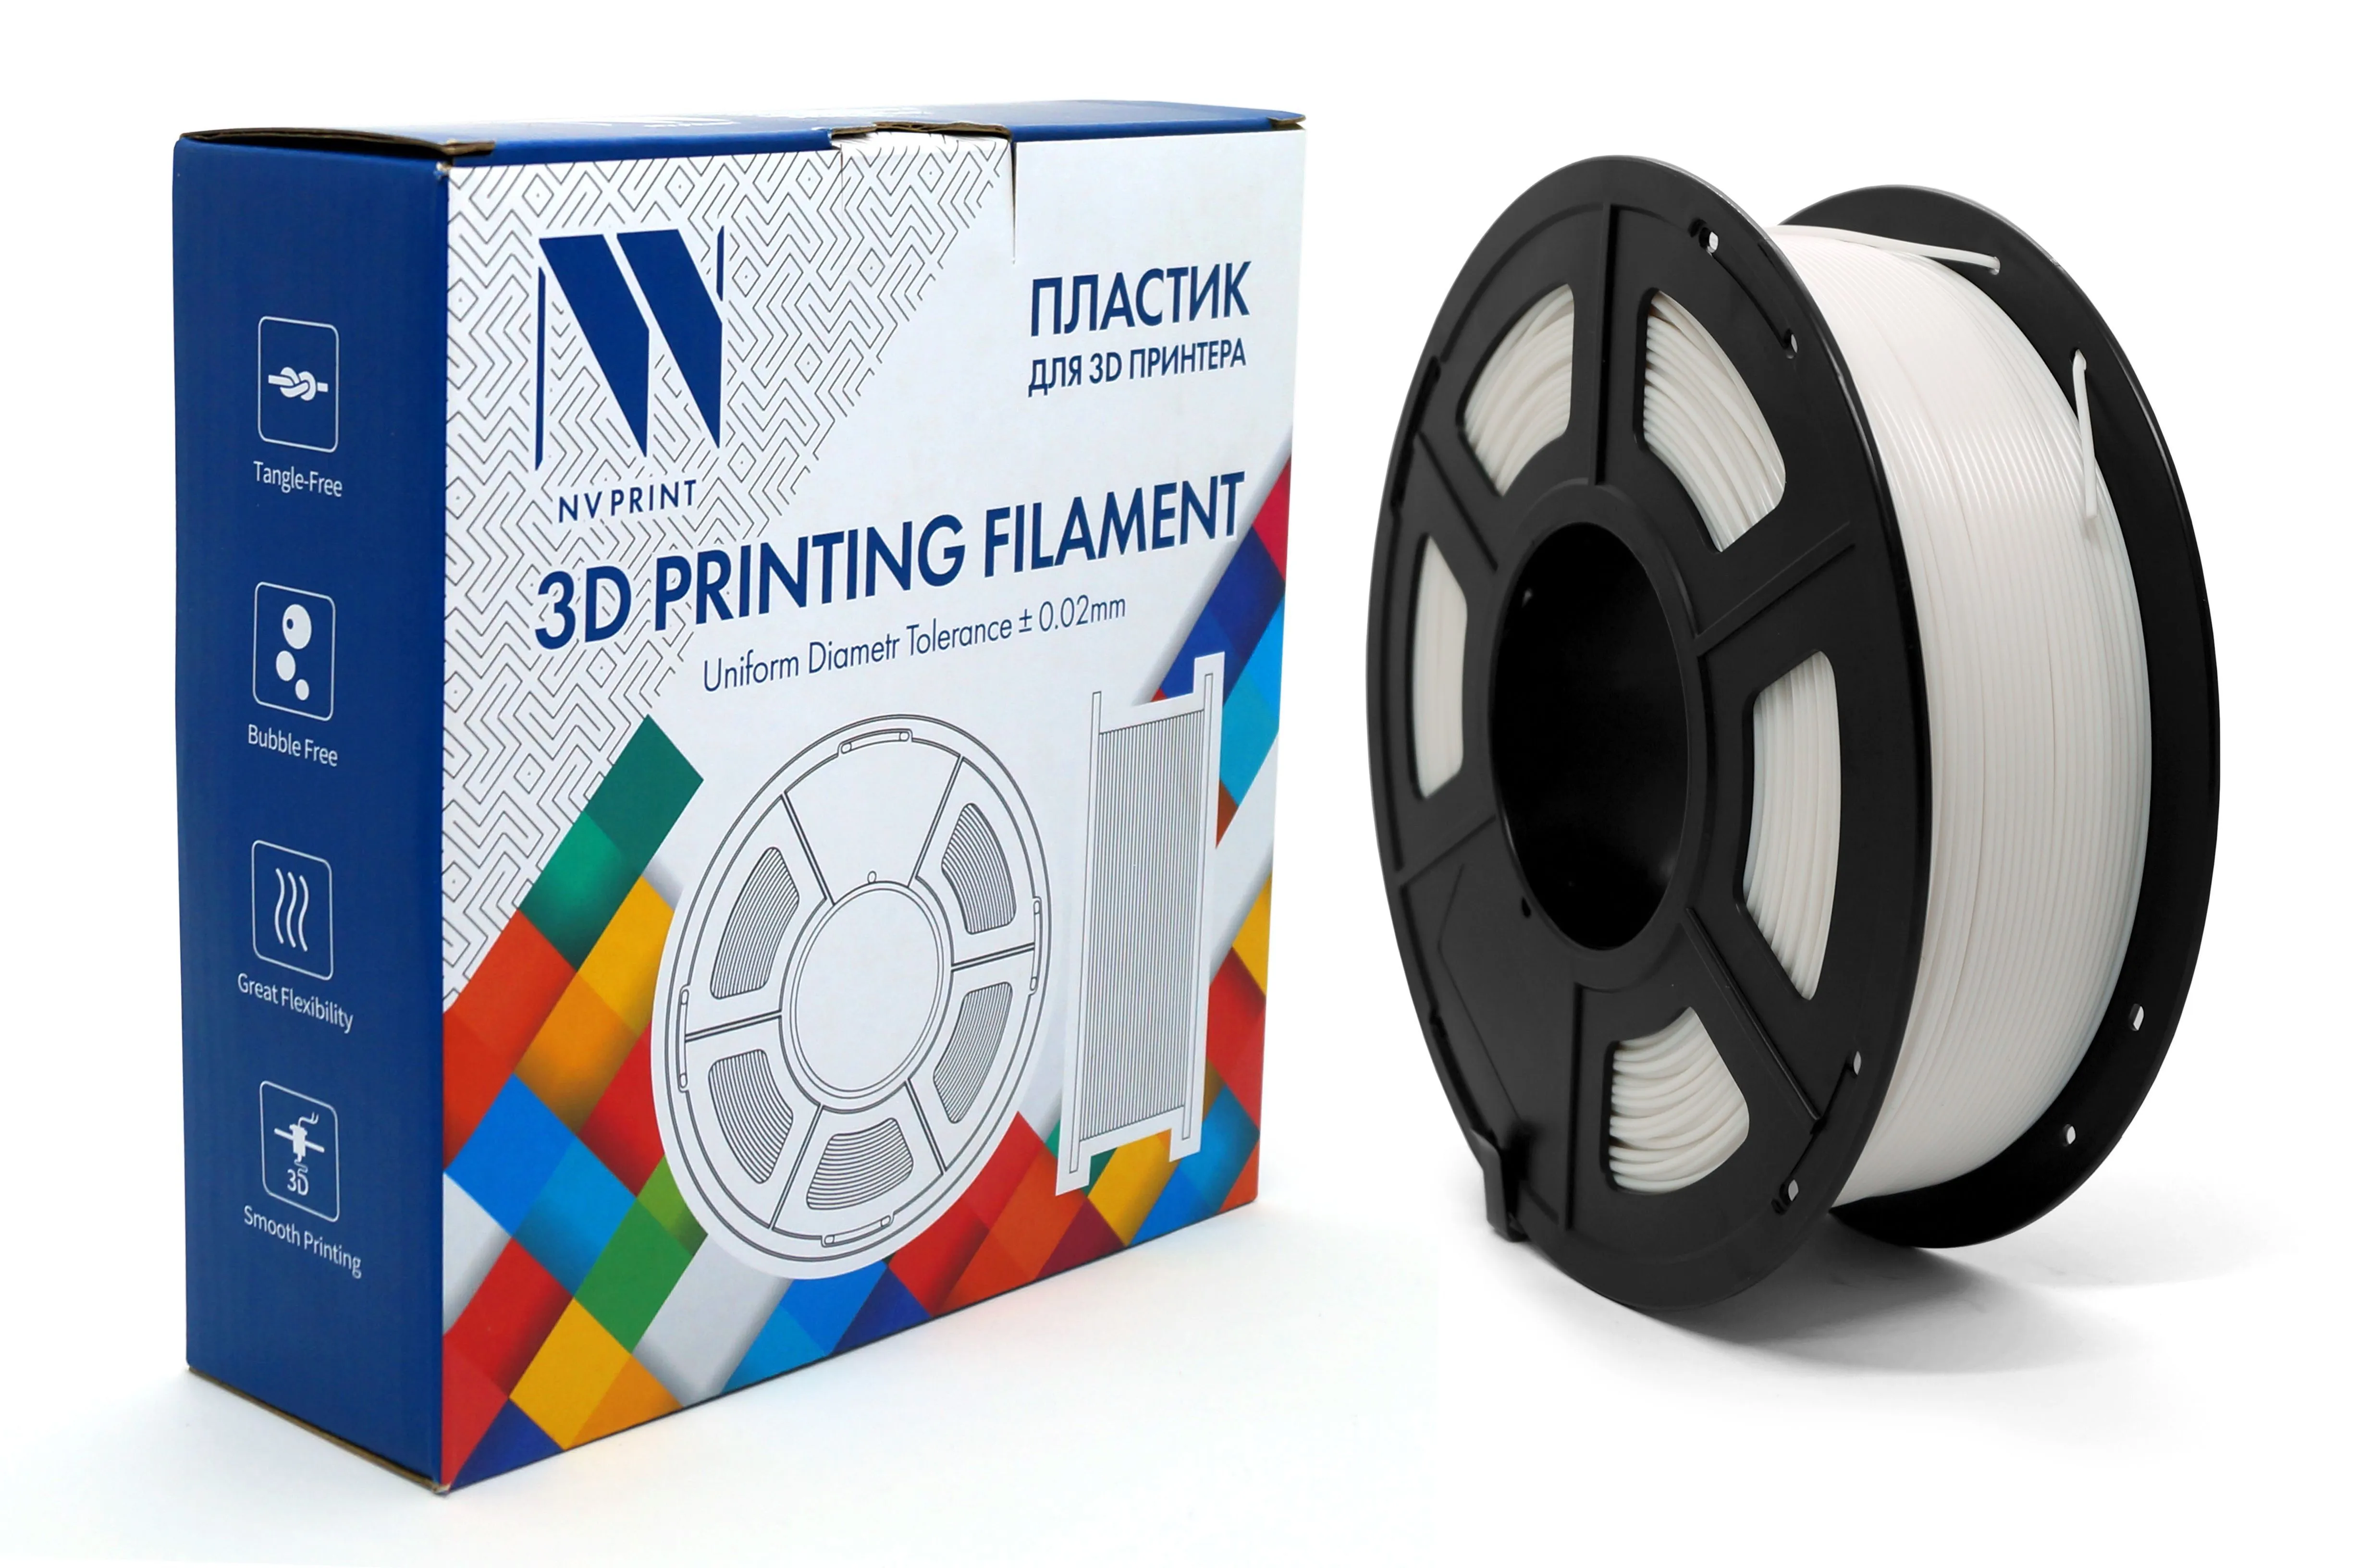 Рекомендованные параметры печати PLA на 3D принтерах